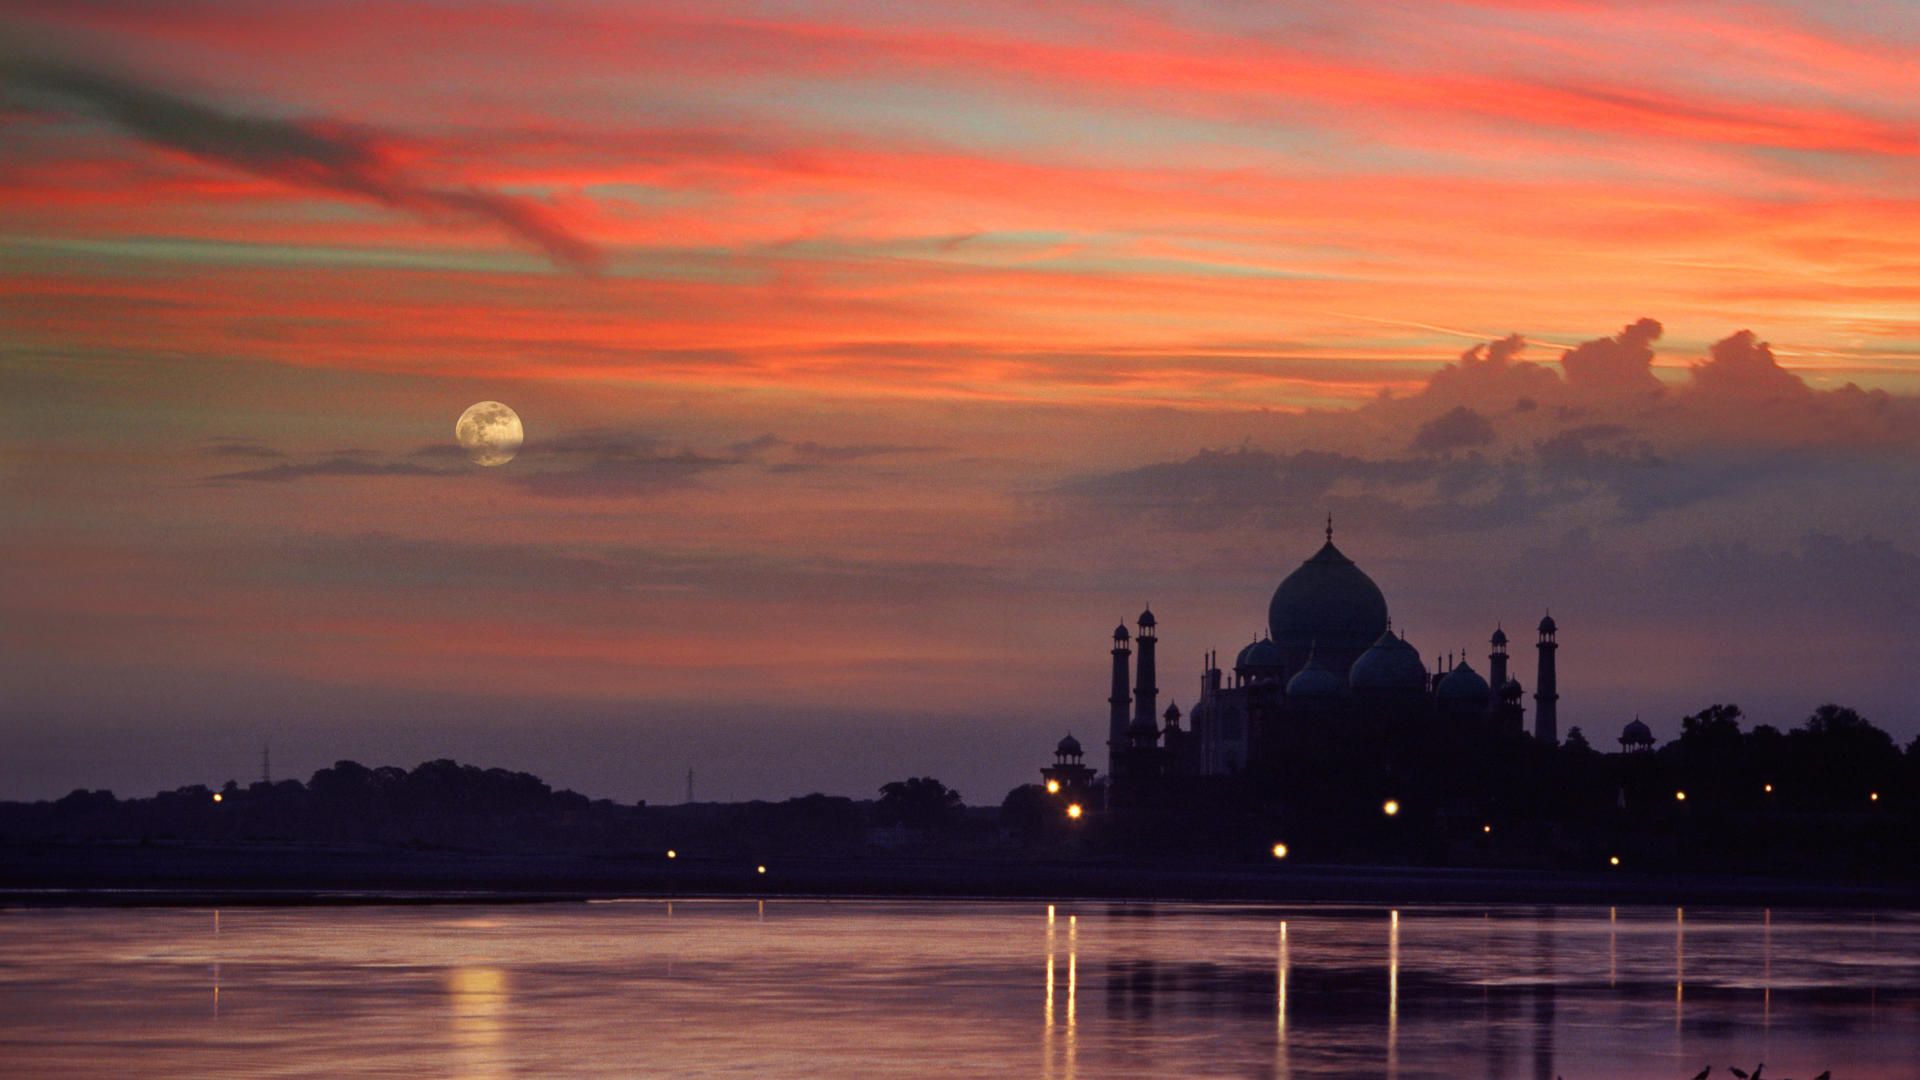 تصویر زمینه جذاب از غروب آفتاب با مسجد زیبا کنار آب در هند